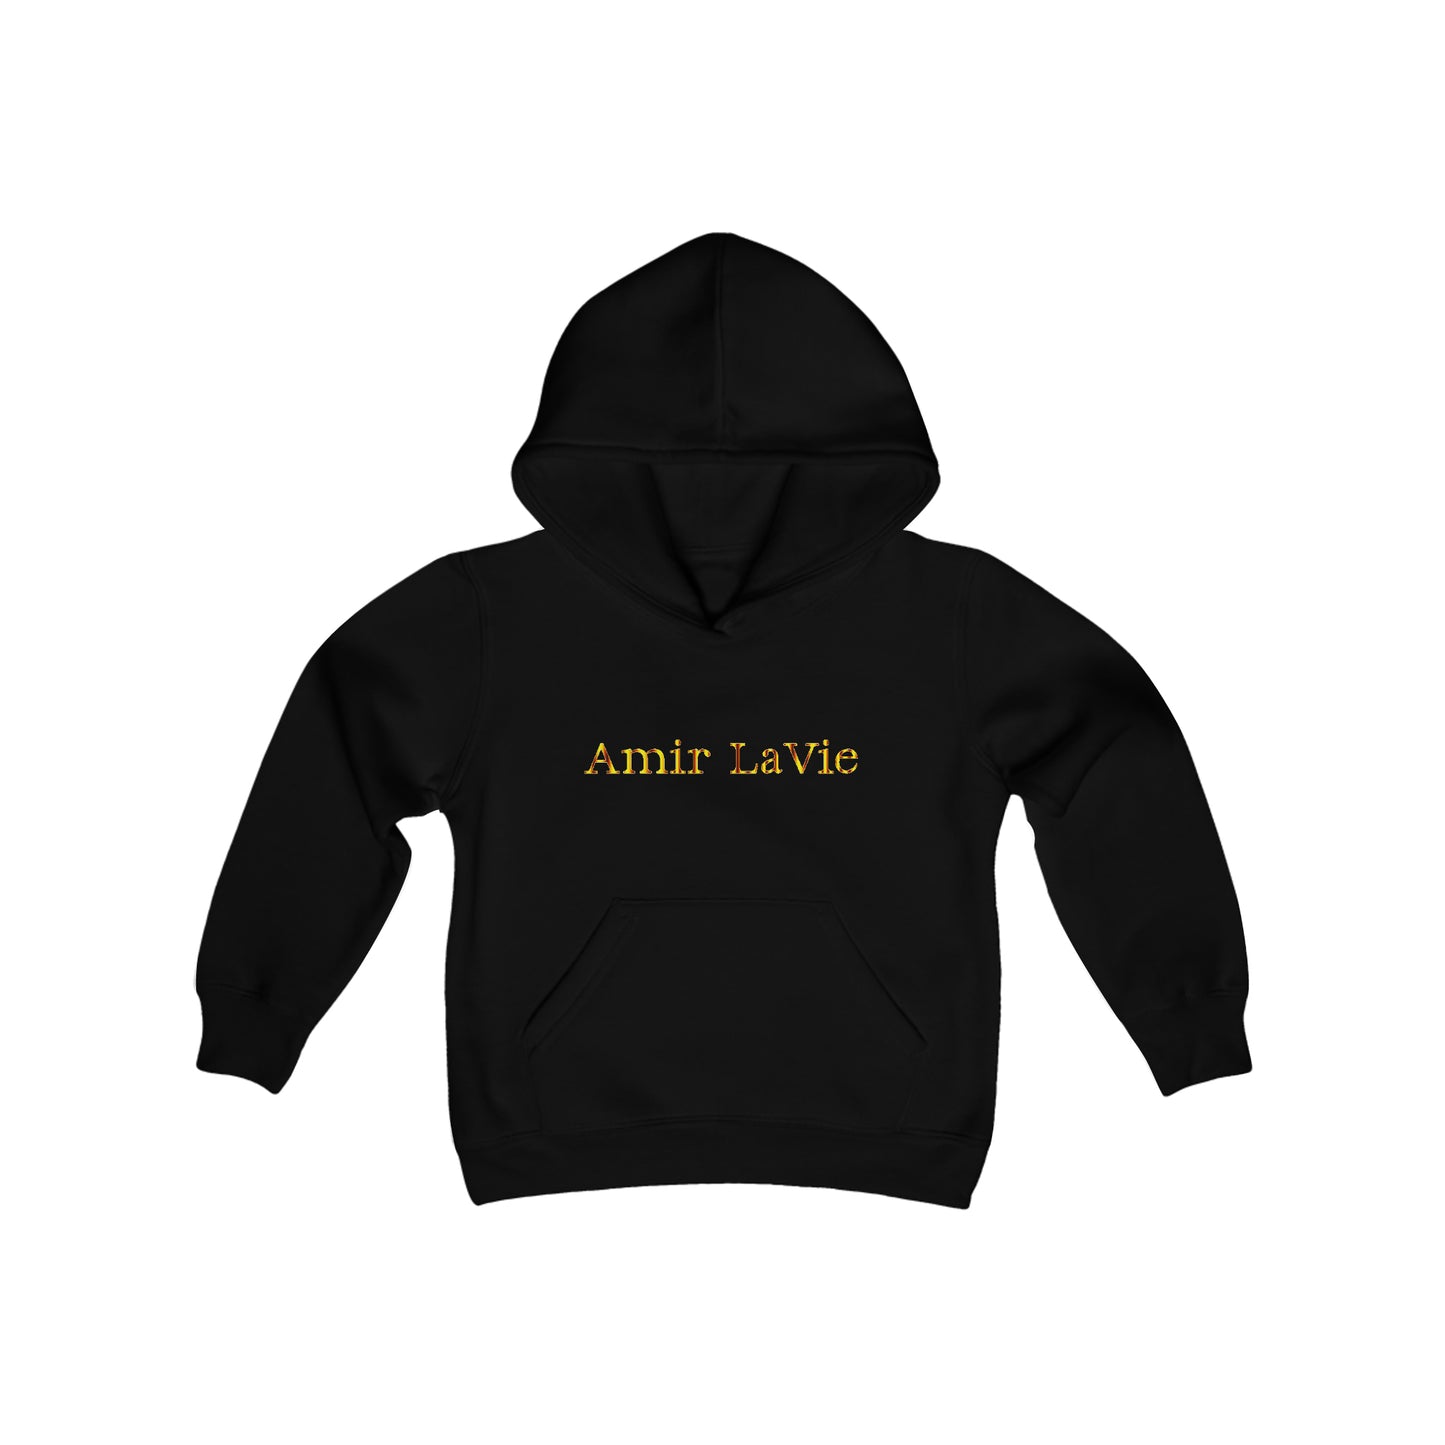 Amir LaVie - Youth Hoodie